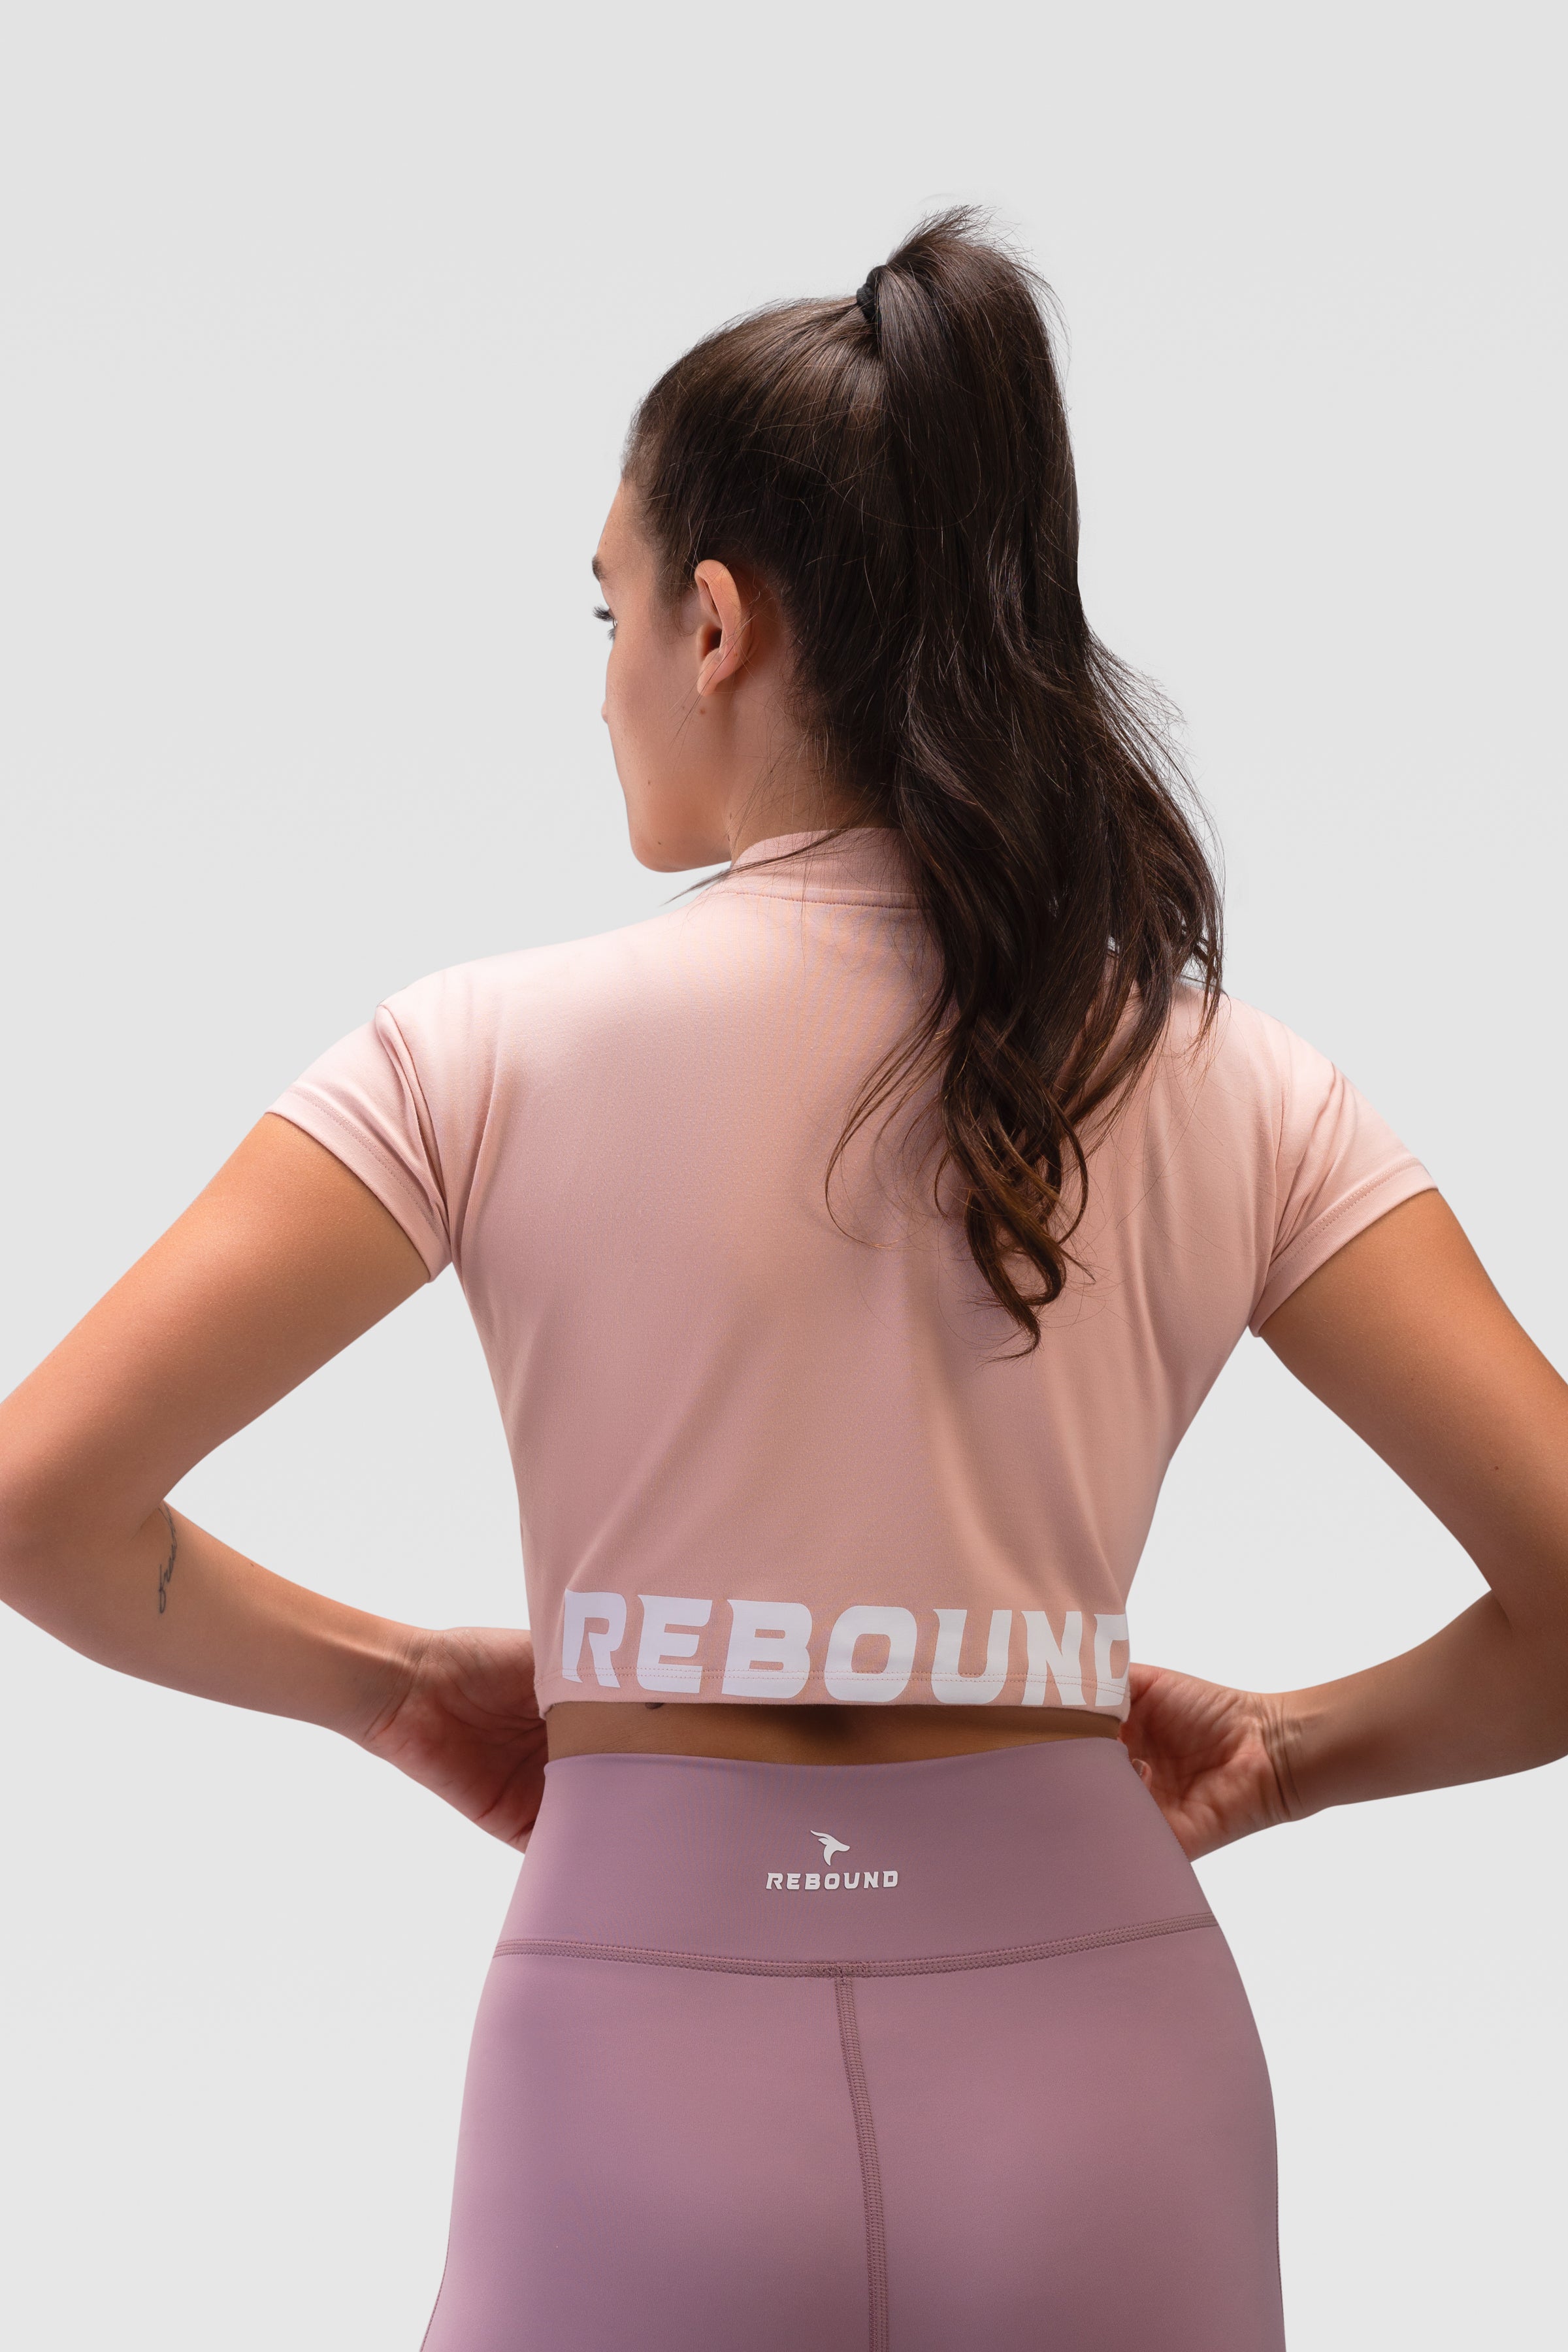 Rebound-1056-Edit.jpg